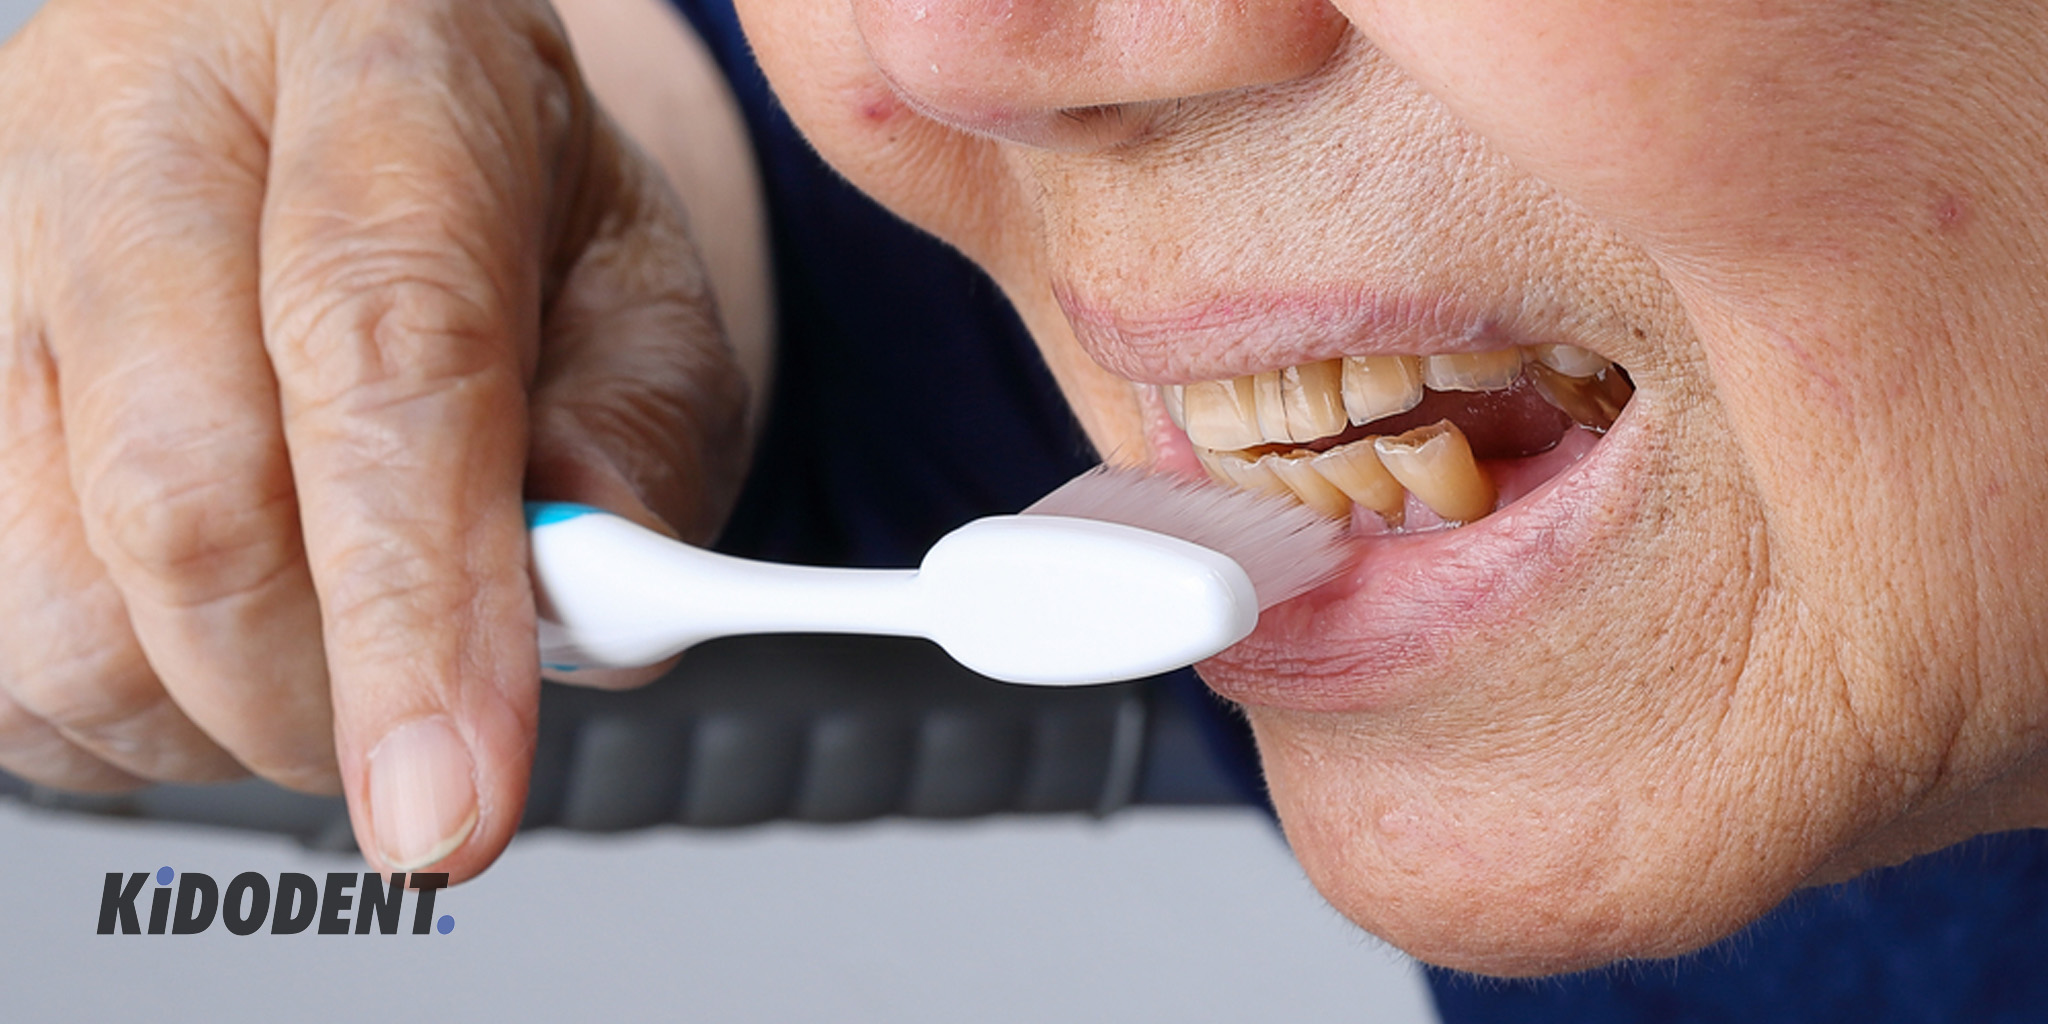 فرسایش دندان: علائم، علل و درمان های رایج